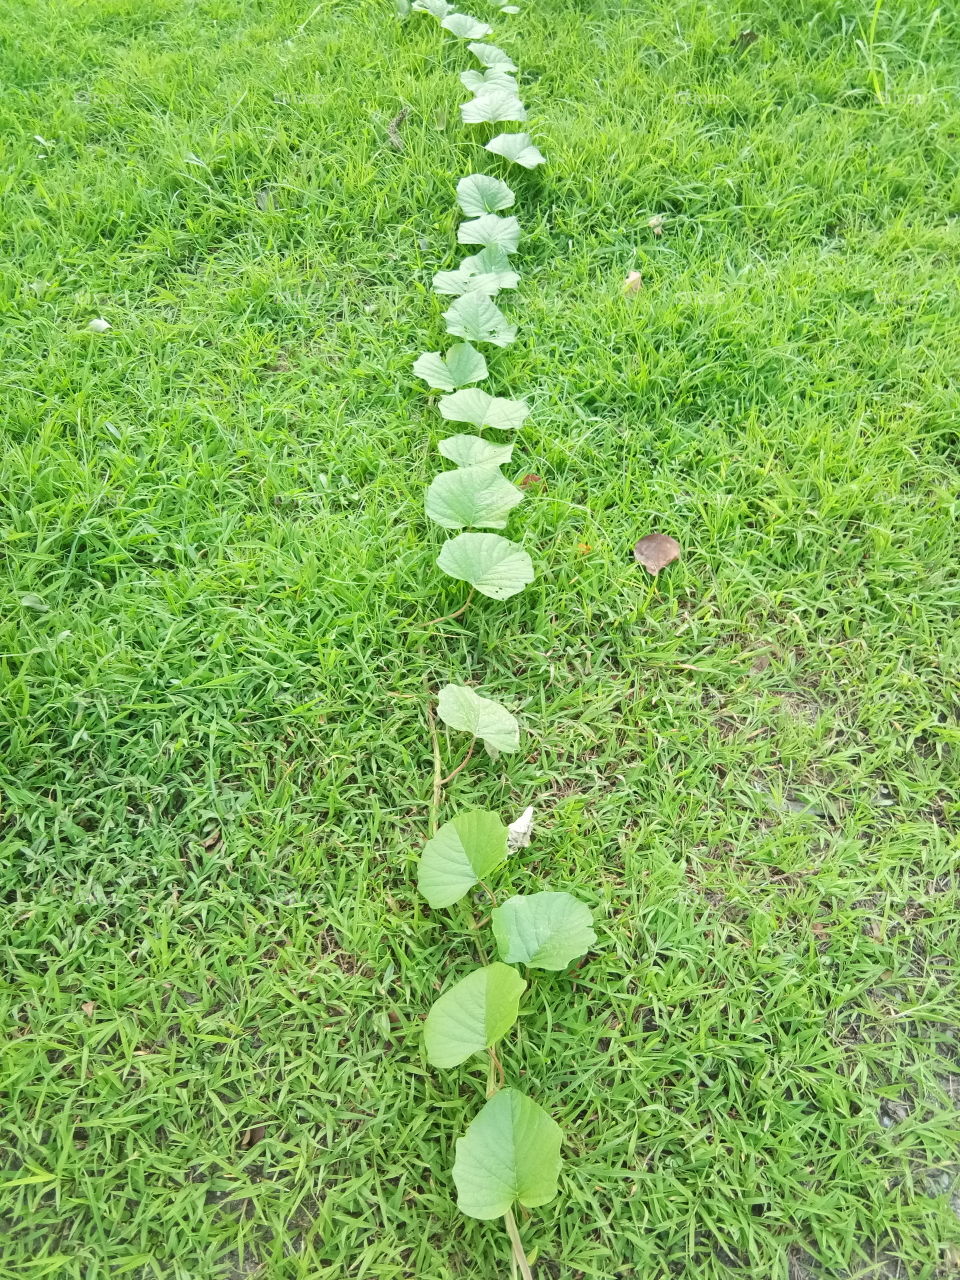 leaf
thailand
ground
green